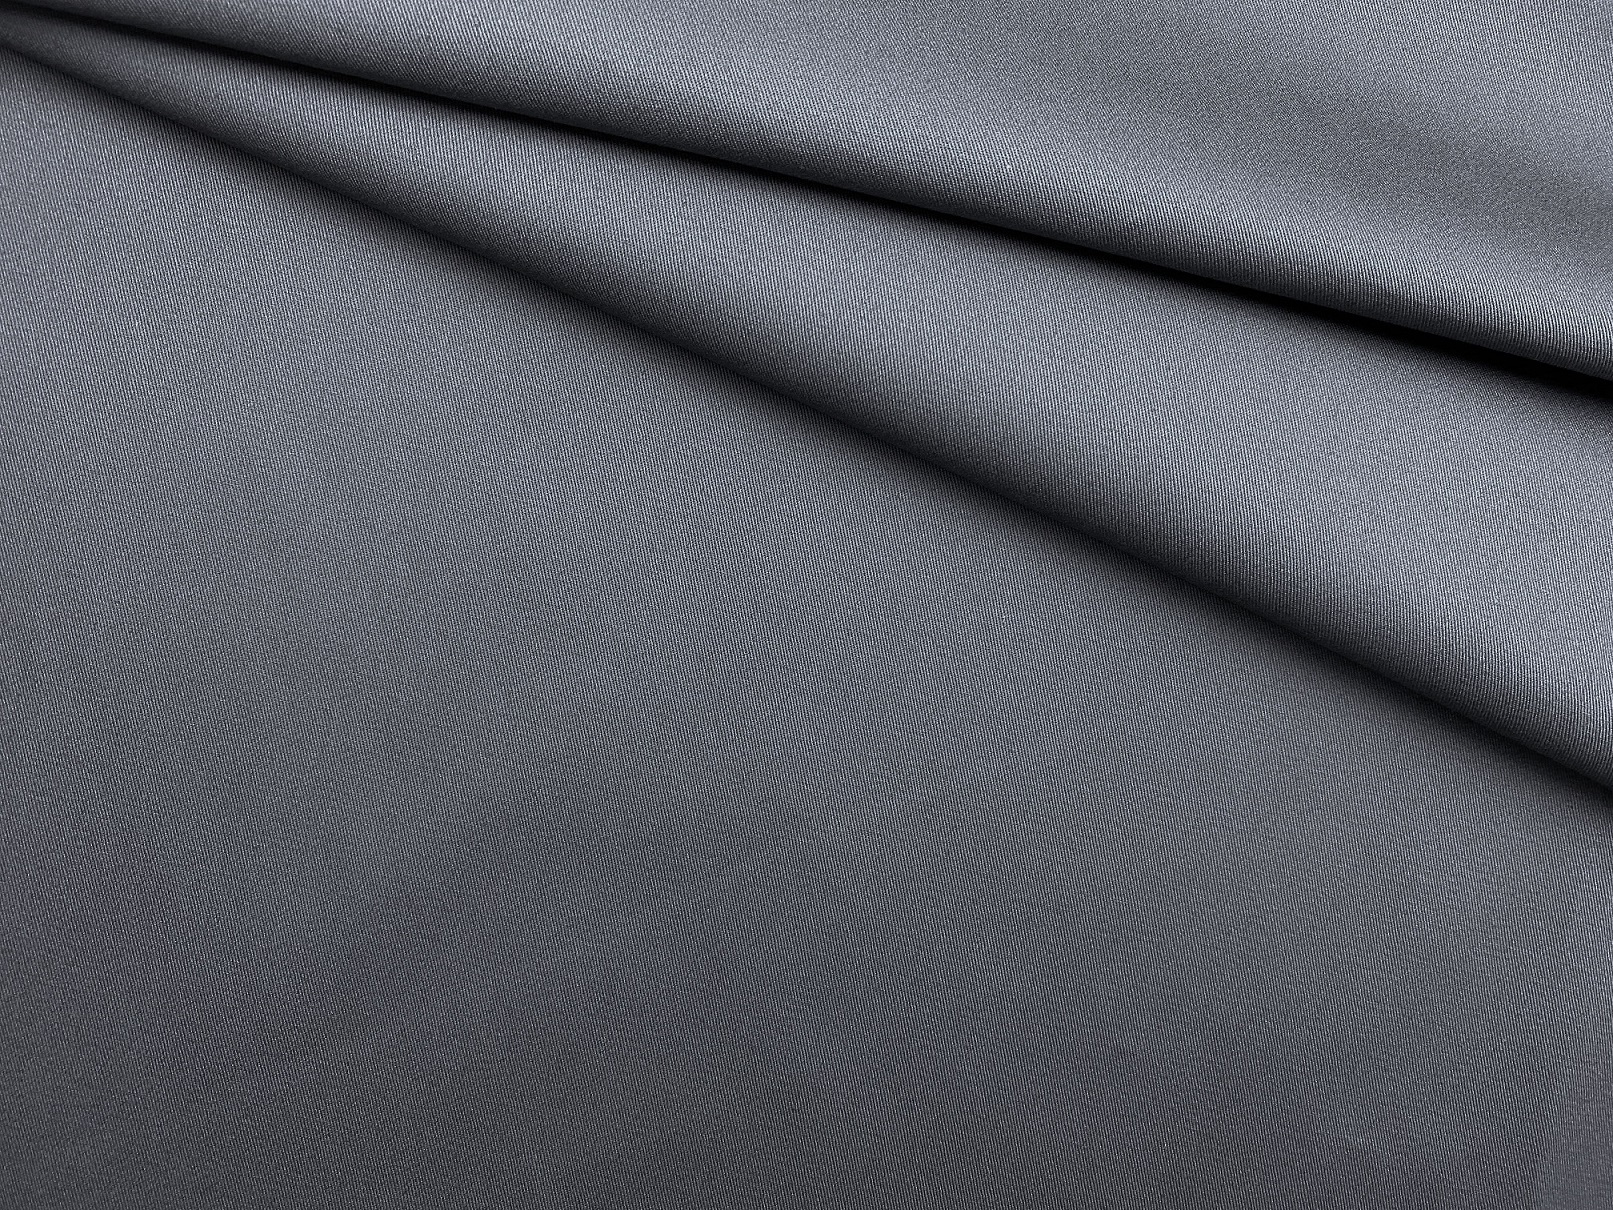 Ткань Хлопок  серого цвета однотонная 16855 1